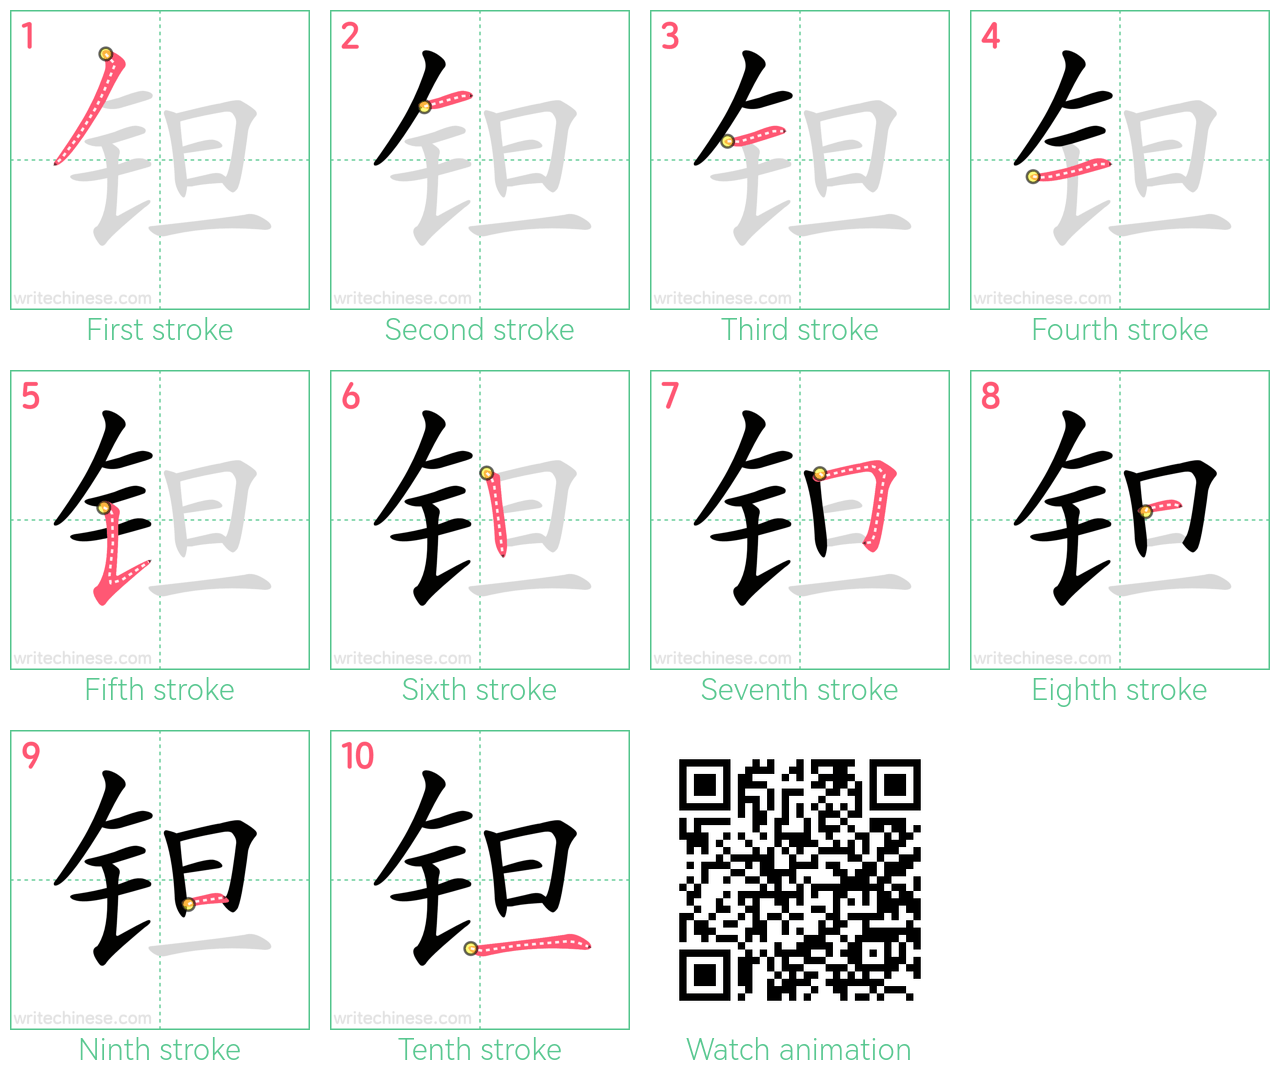 钽 step-by-step stroke order diagrams